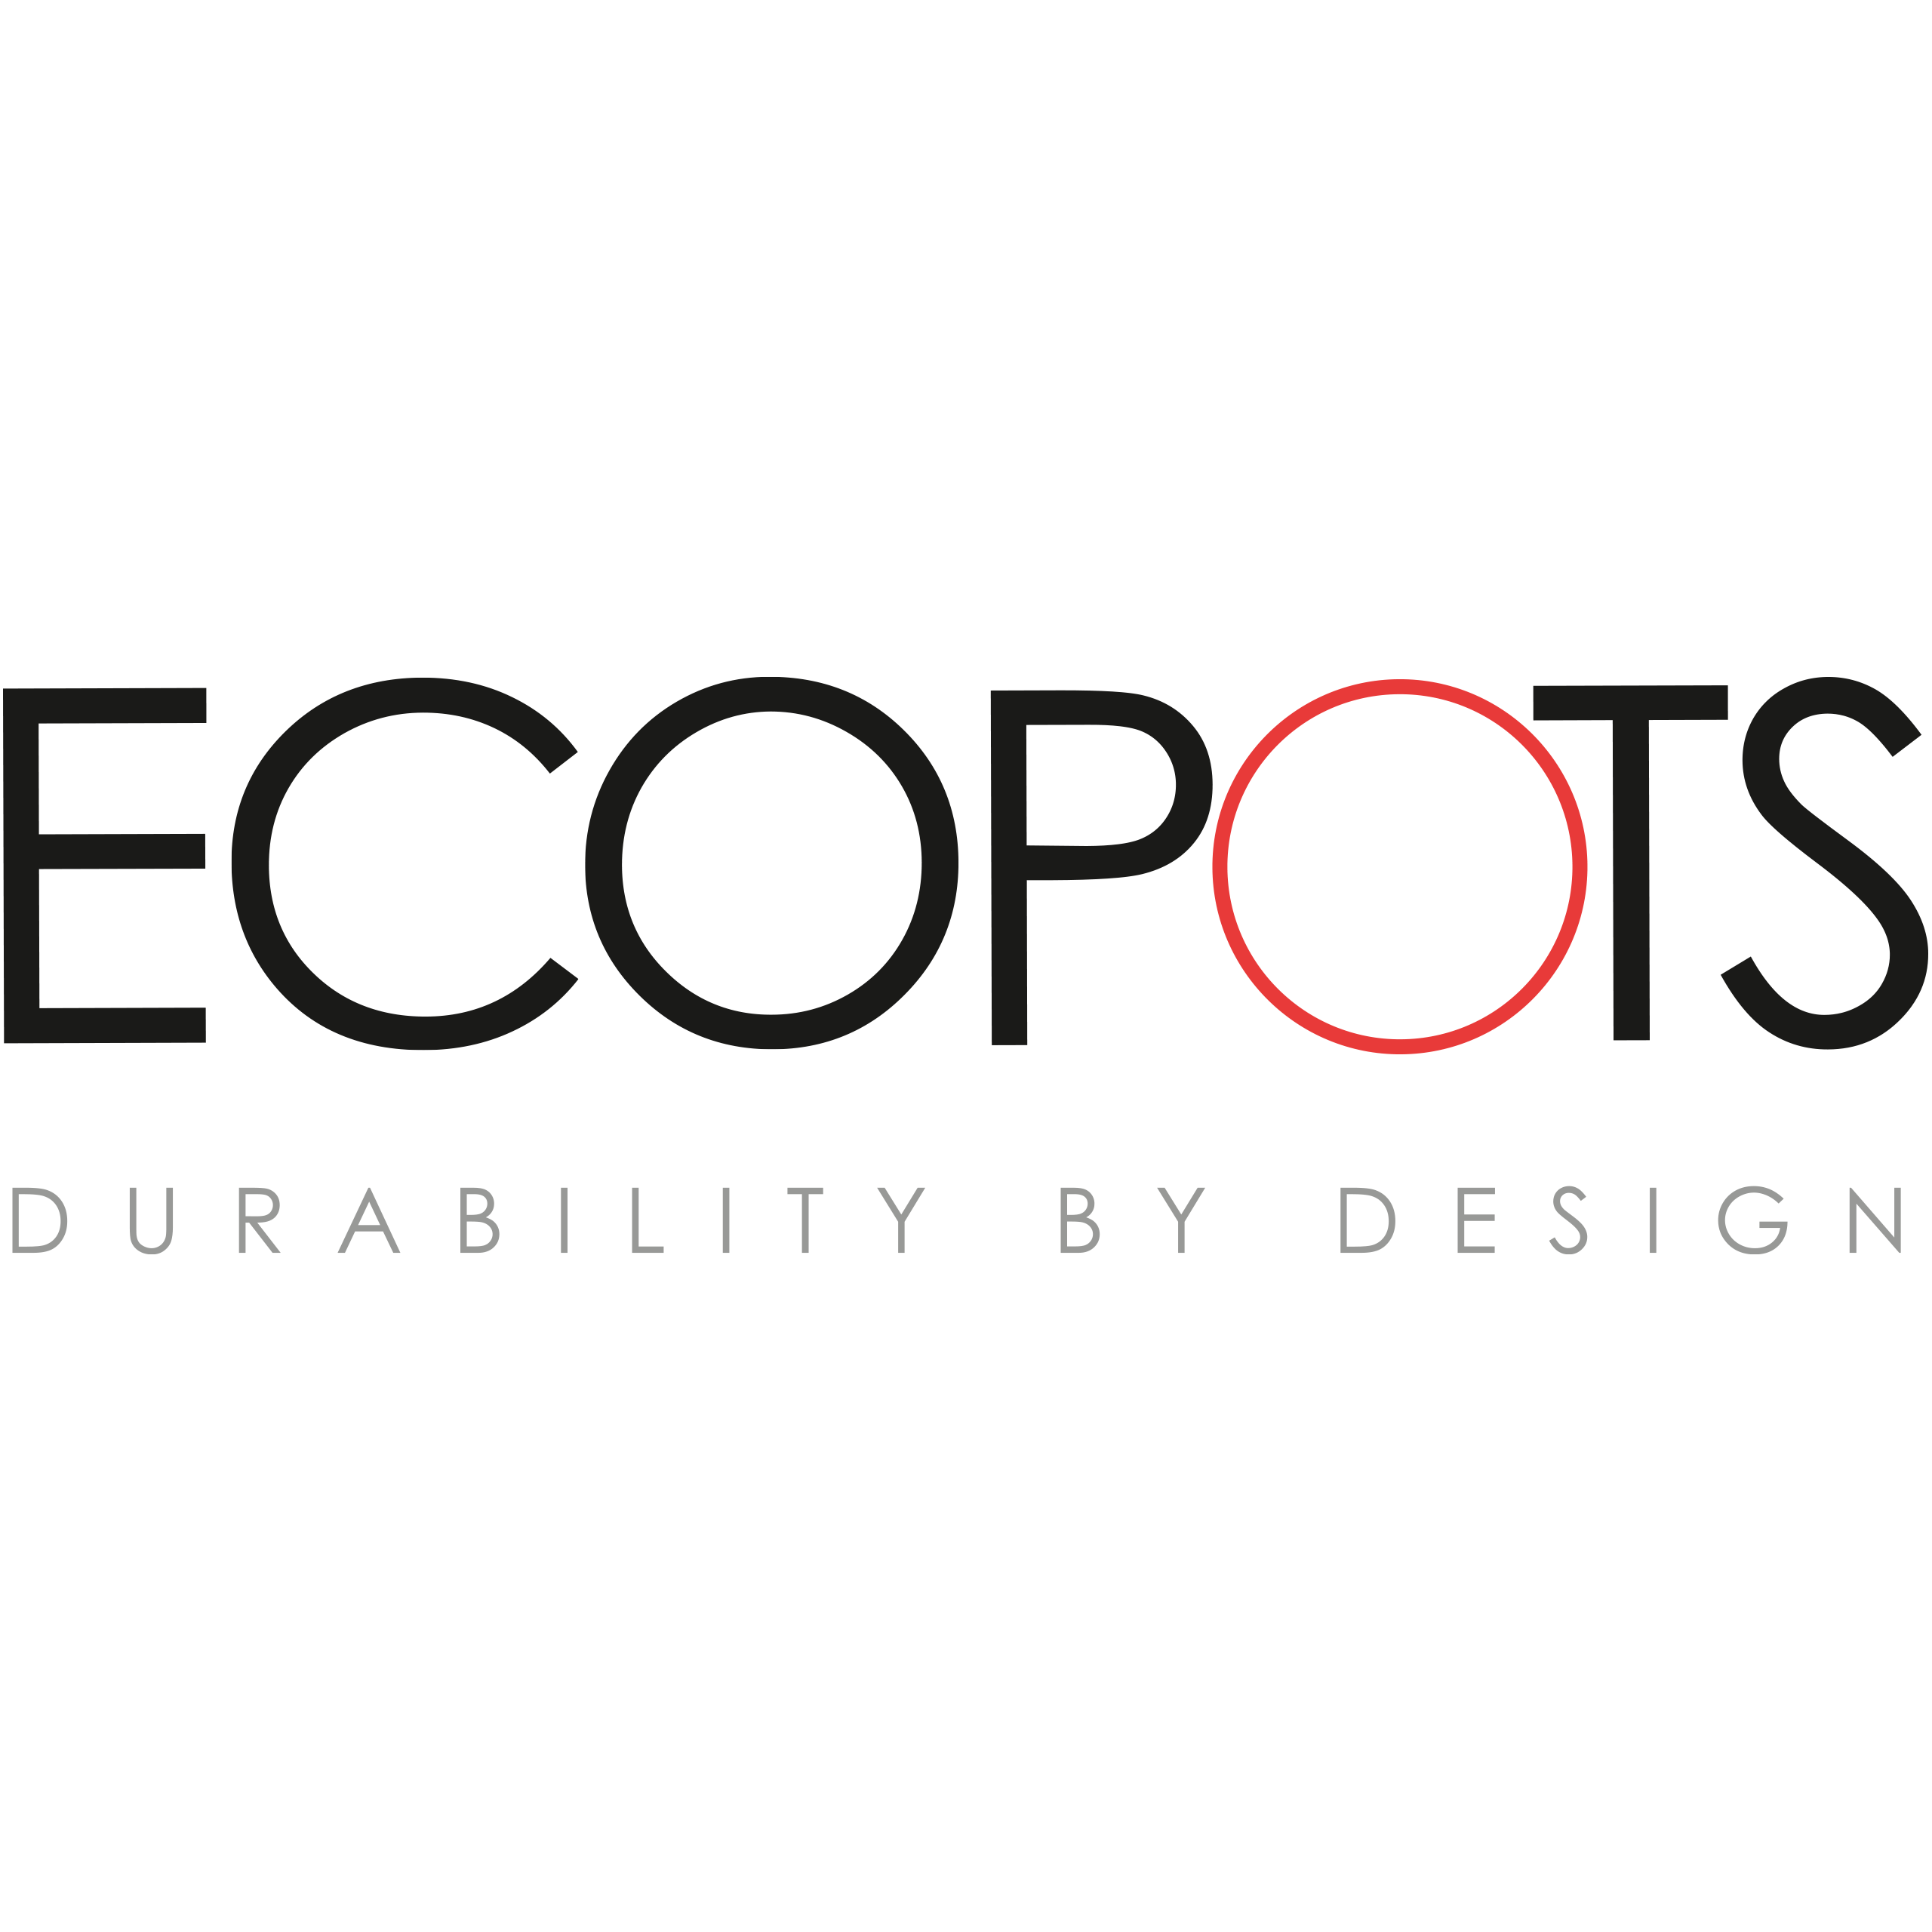 Logo Ecopots